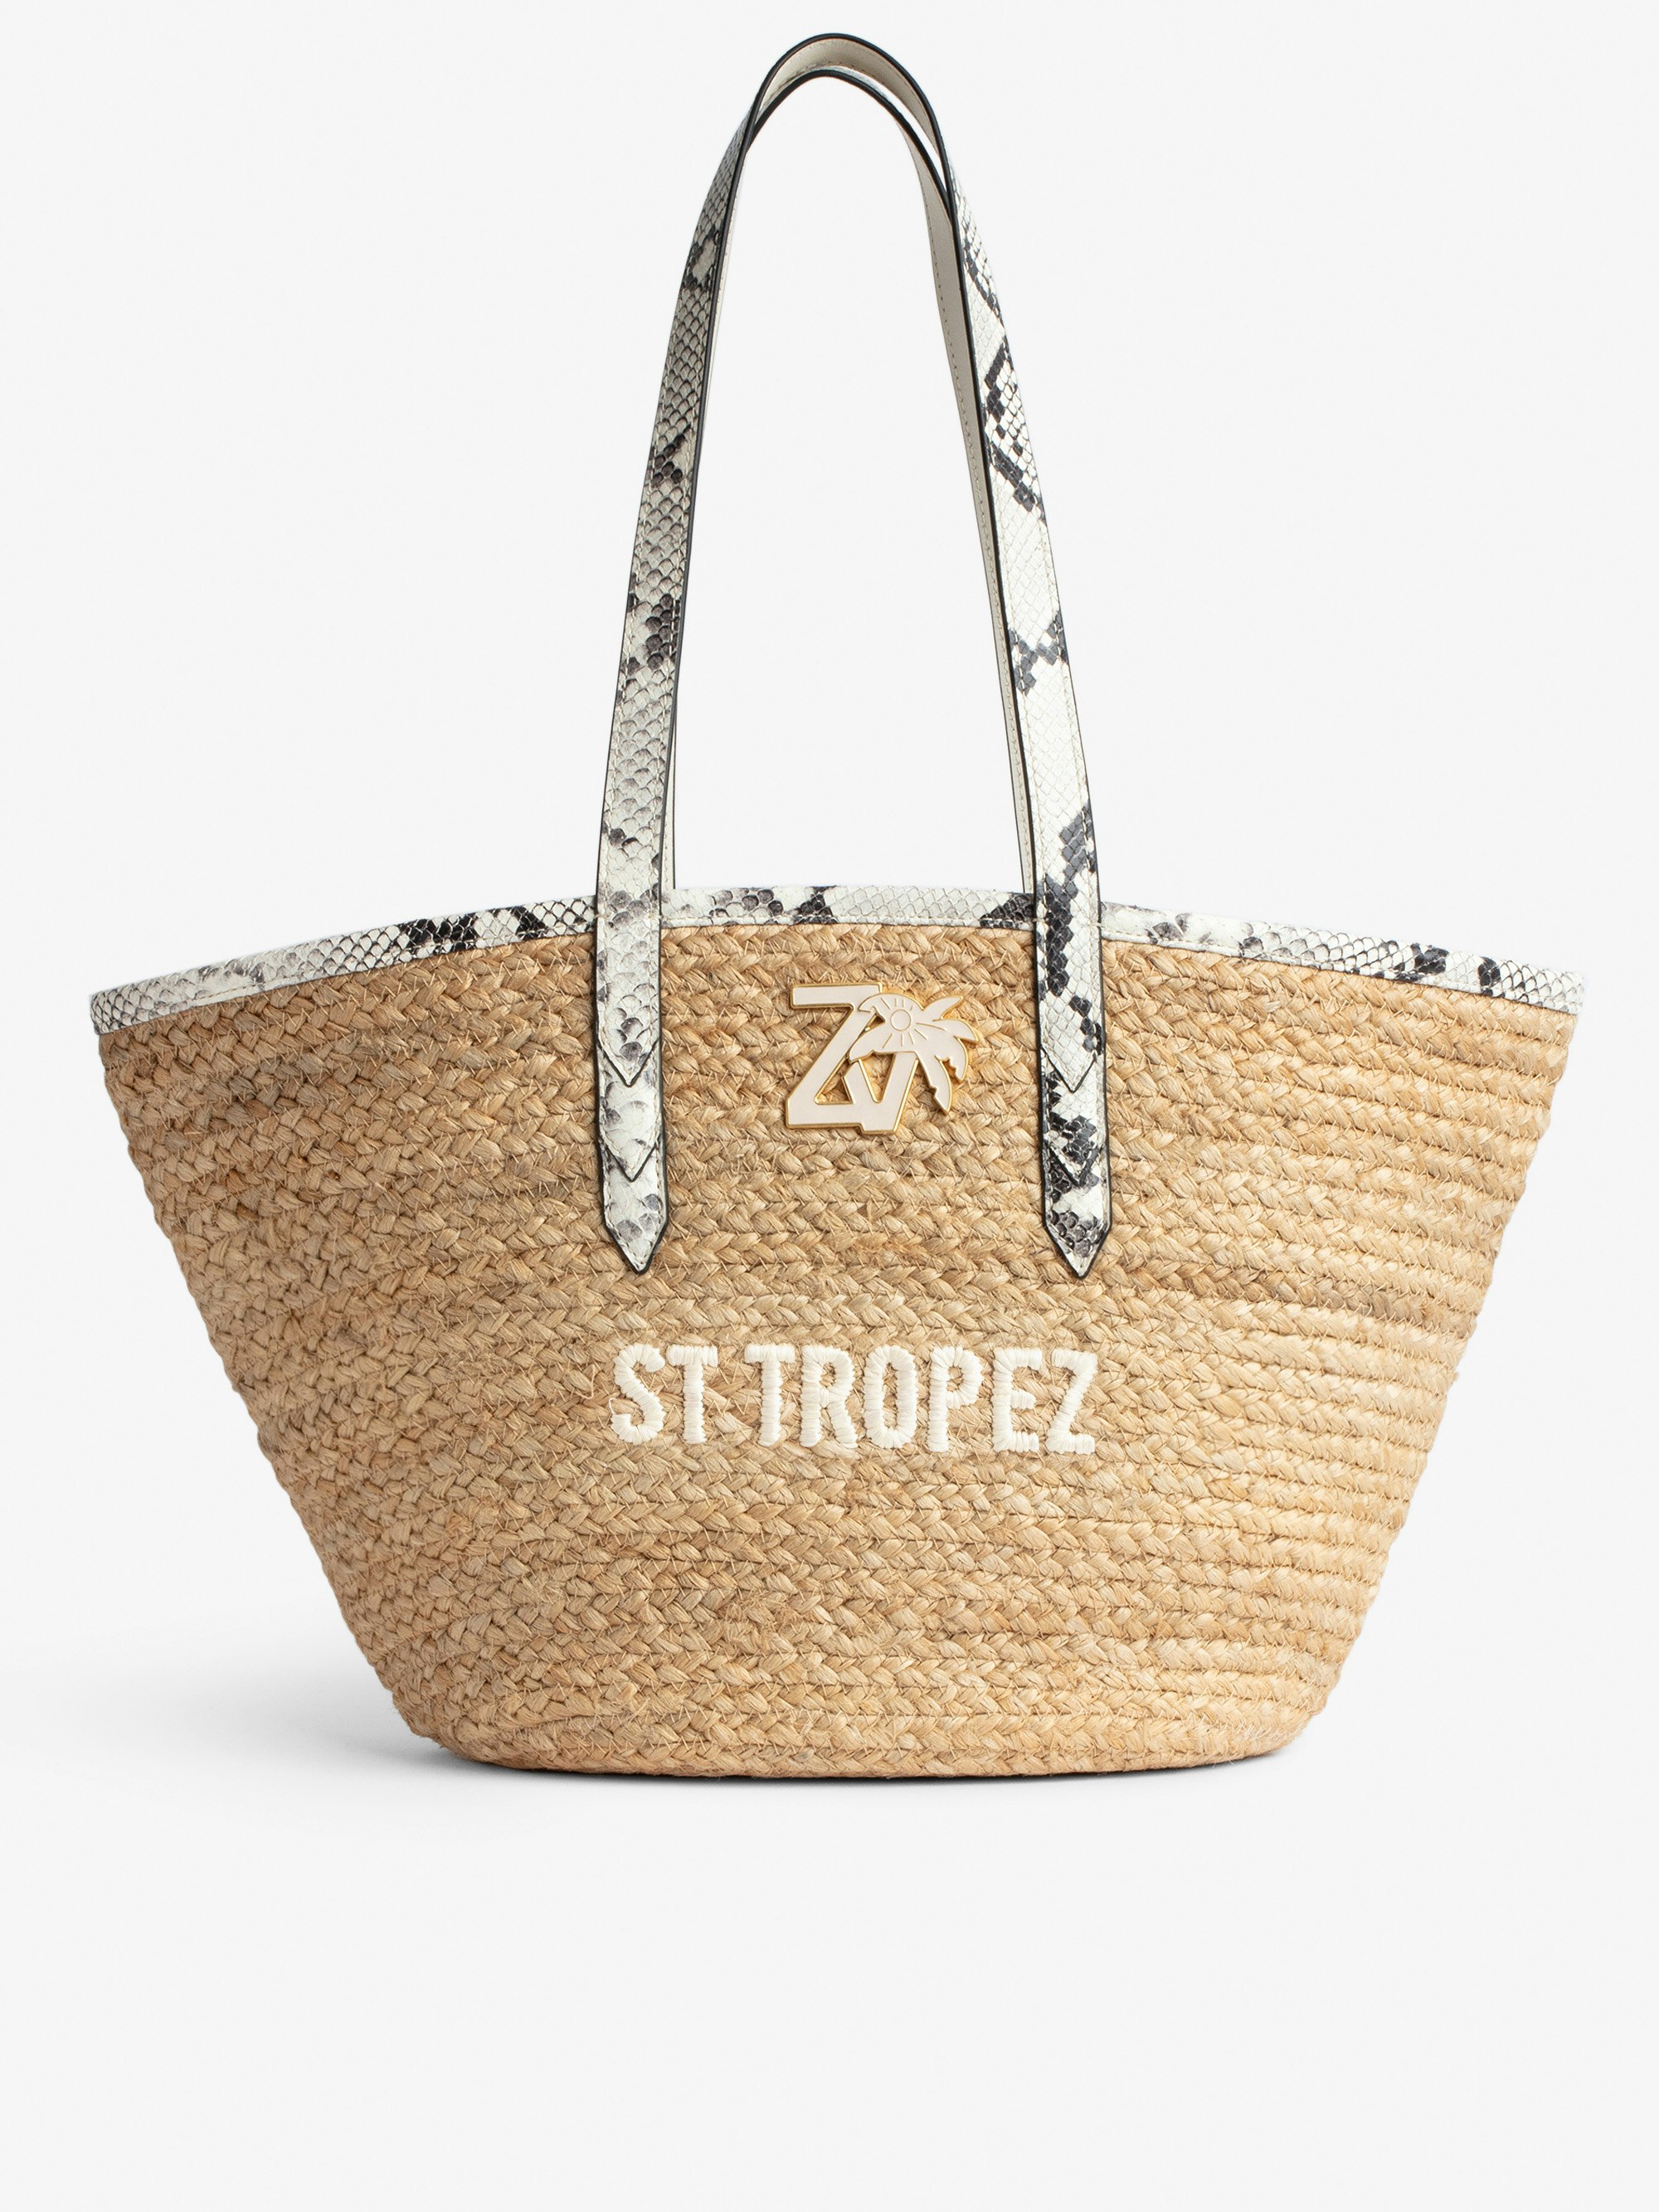 Borsa Le Beach Bag - Borsa in paglia con manici in pelle ecru effetto pitone, con ricamo "St Tropez" e impreziosita da un charm ZV - Donna